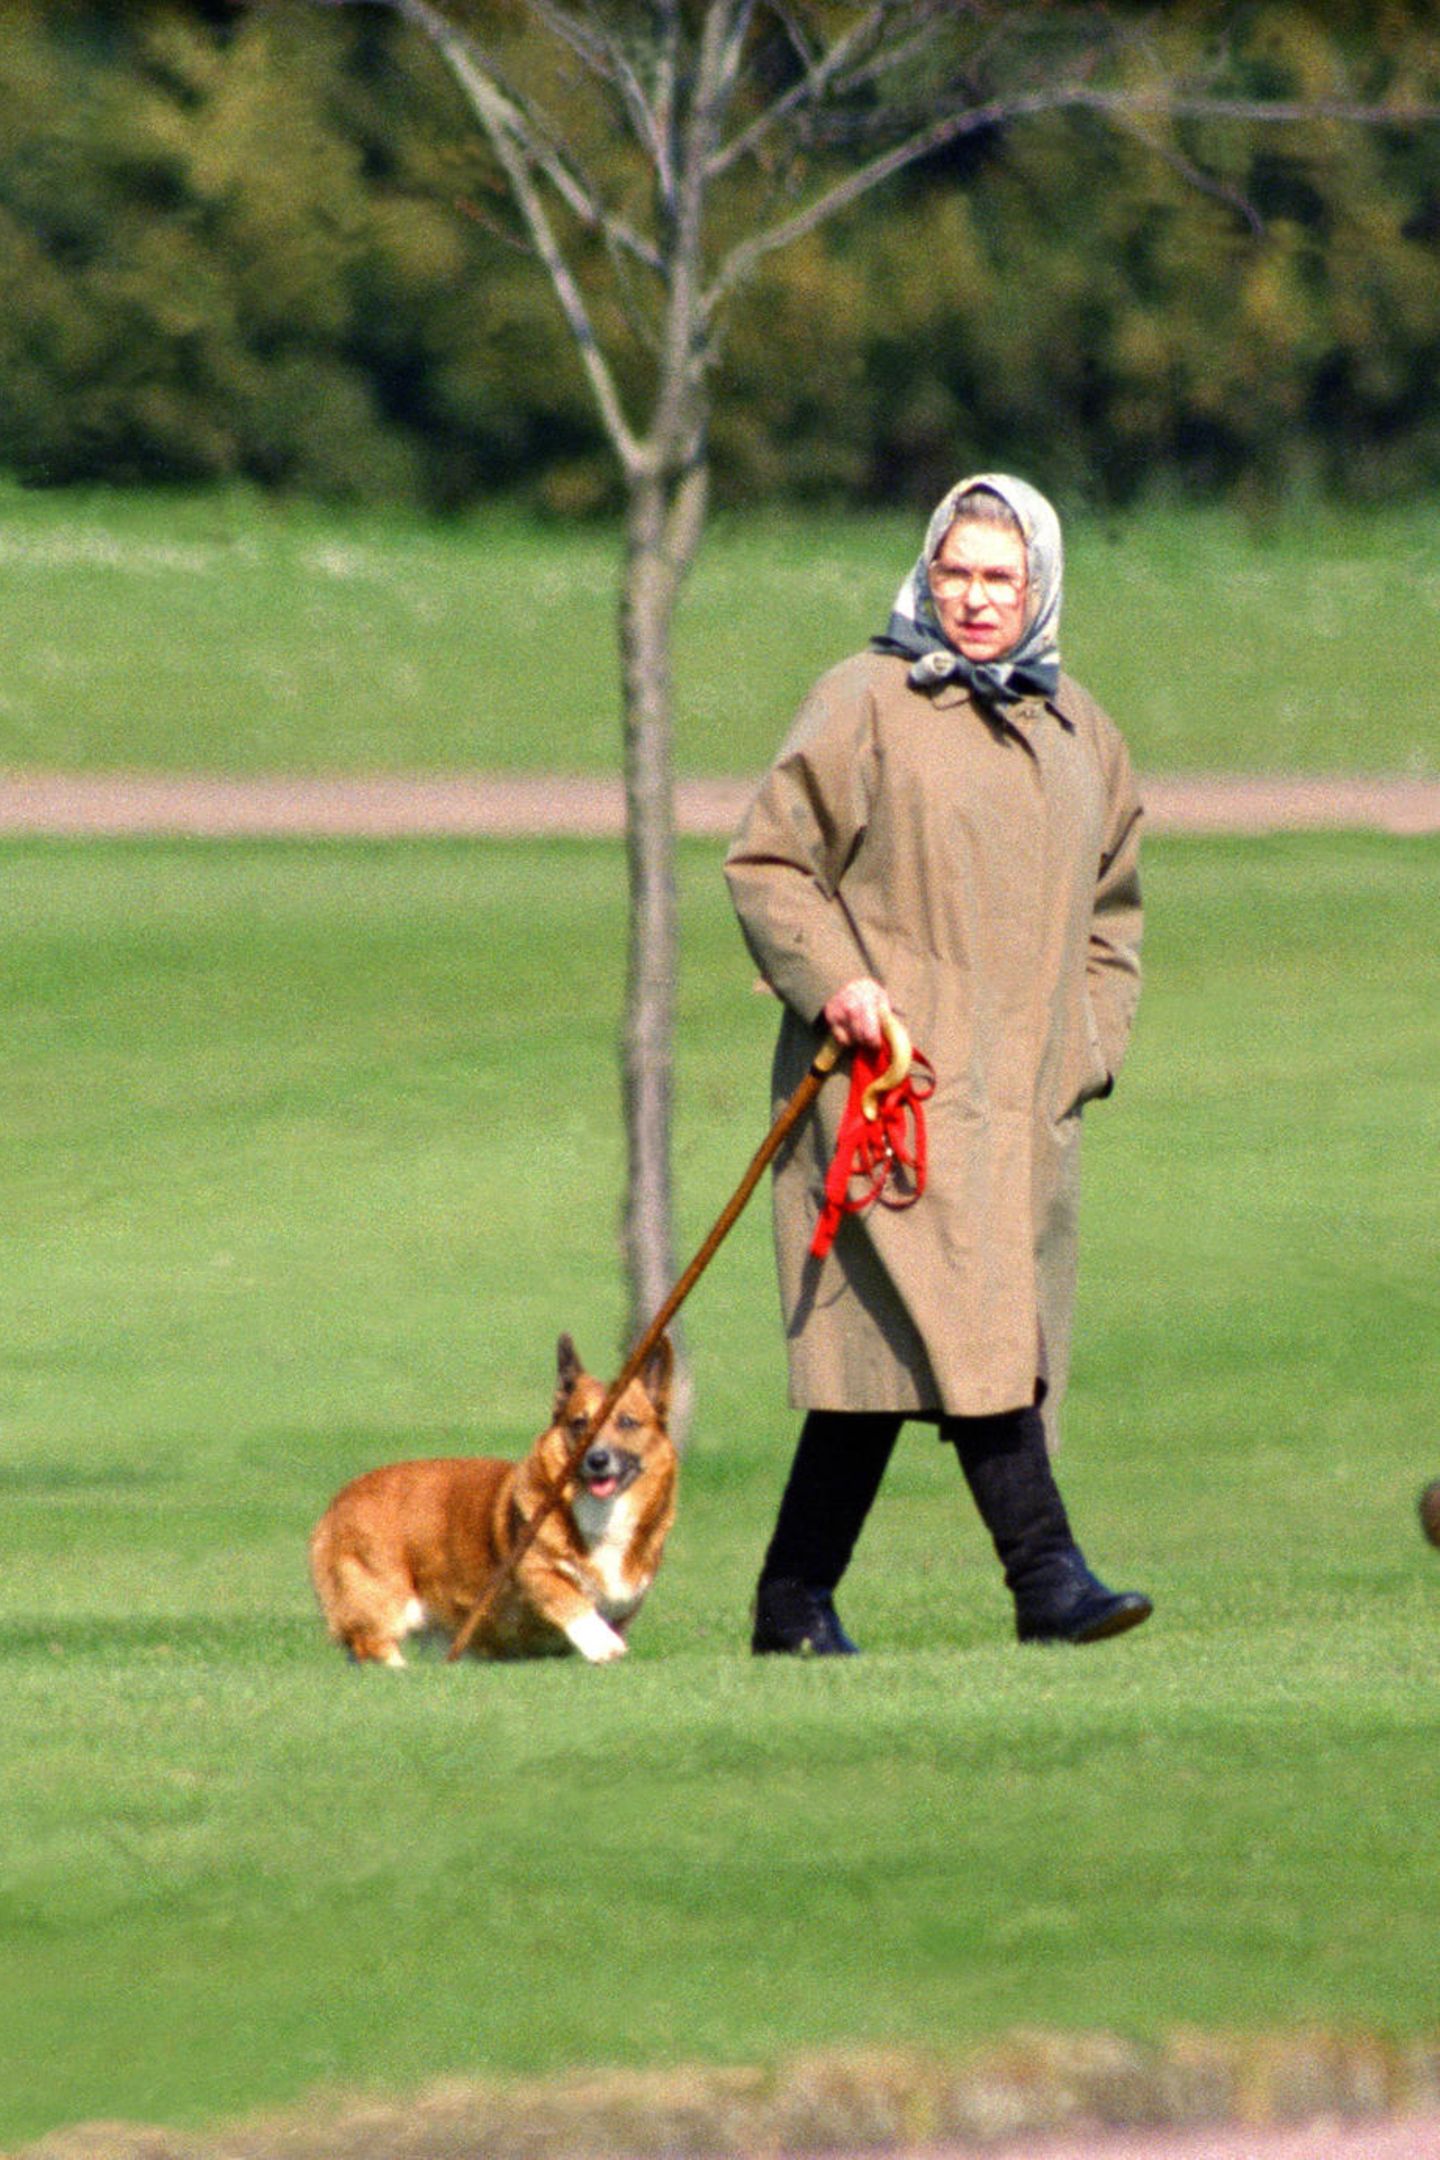 Queen ihre So verwöhnt Hunde sie Elizabeth: